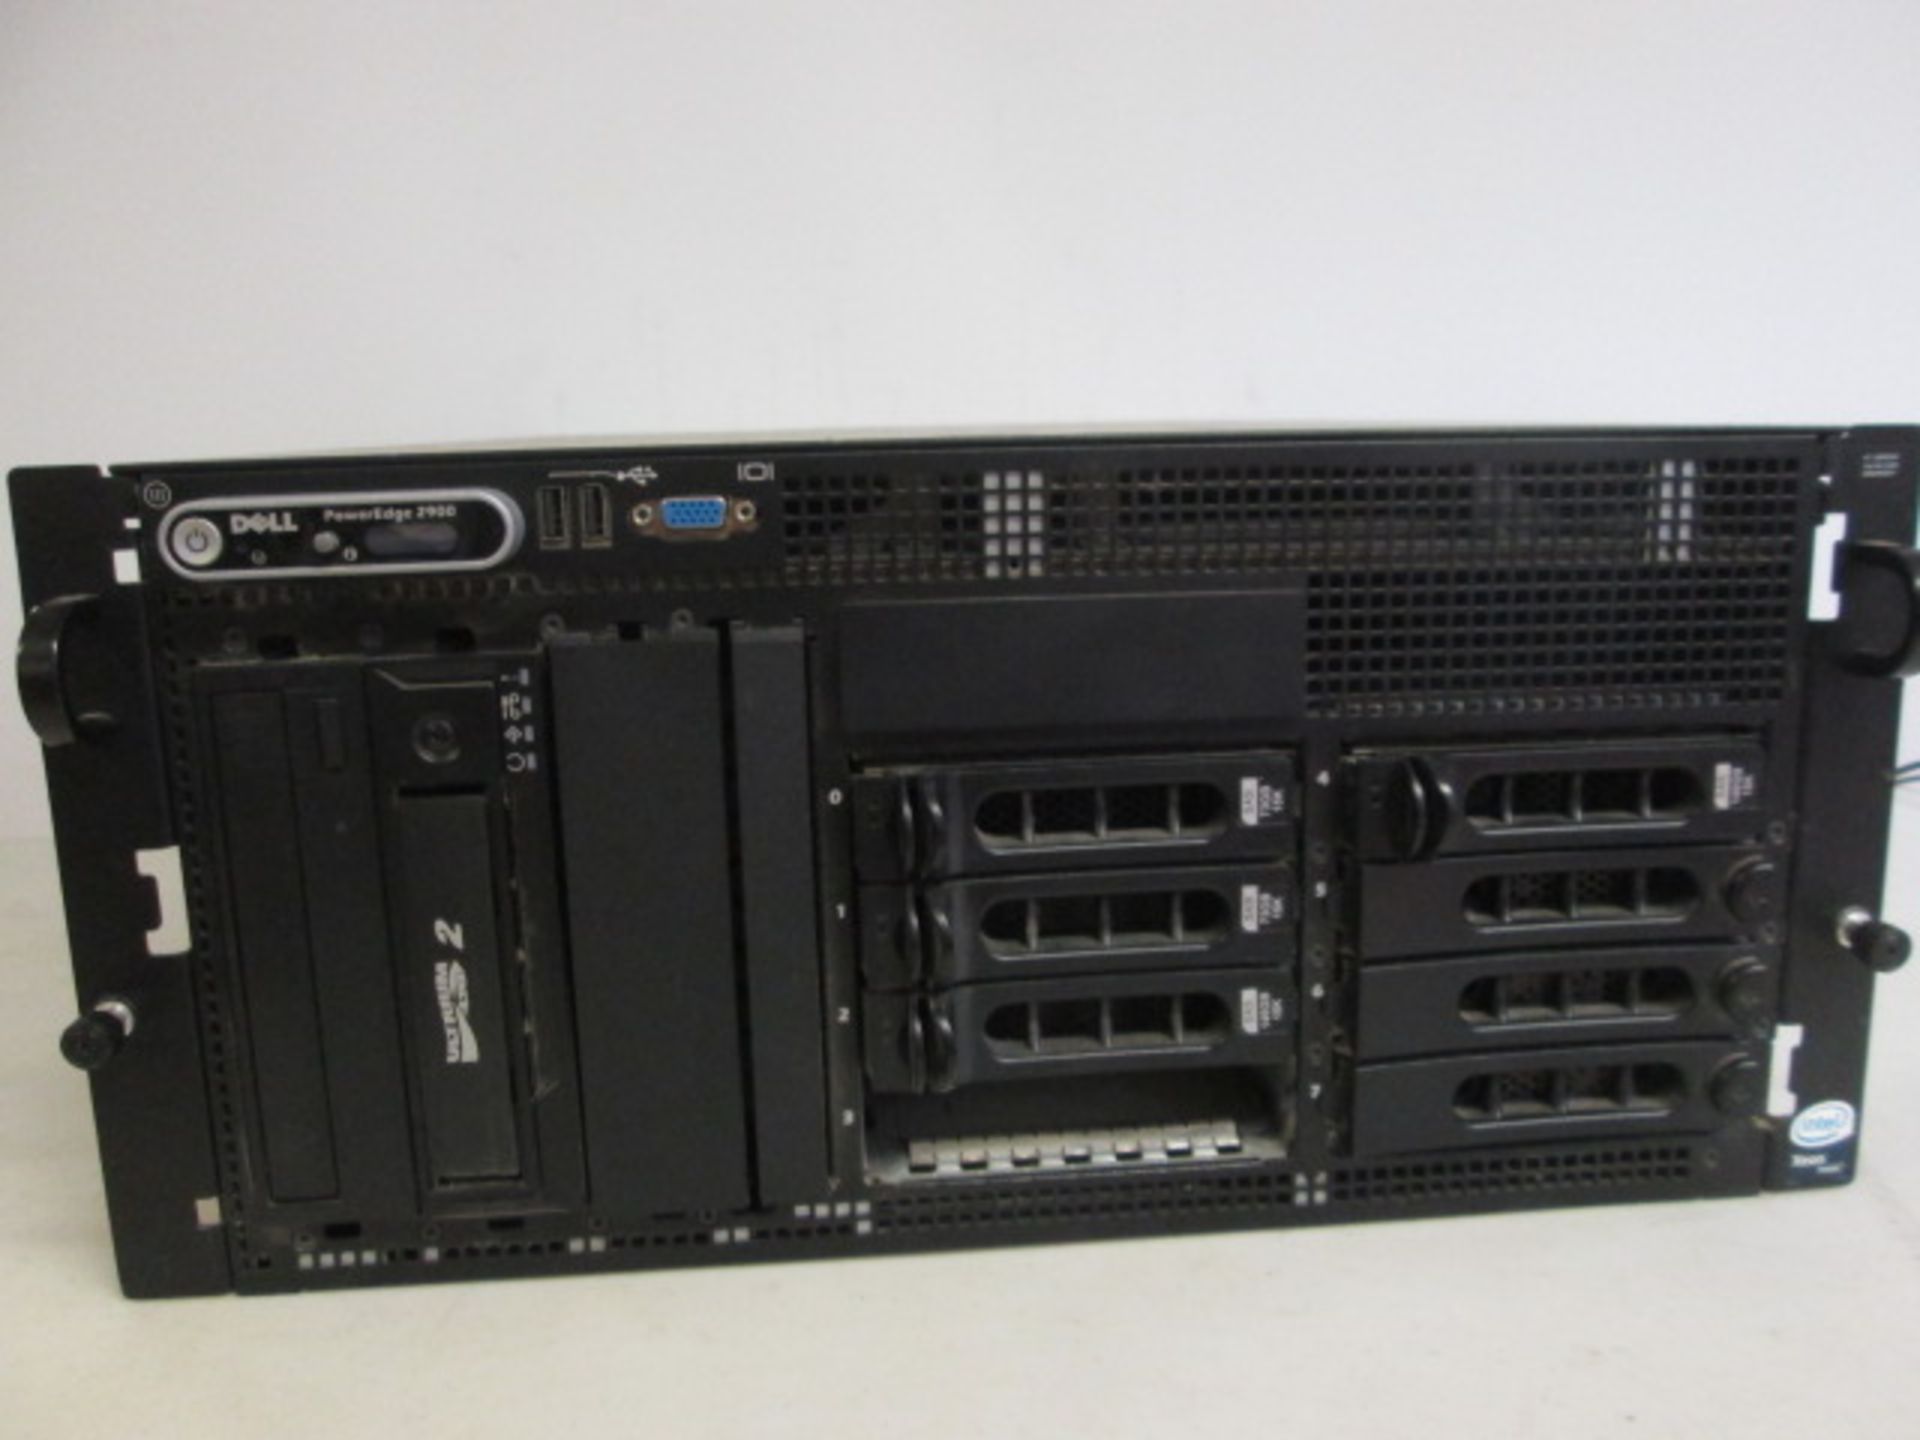 Dell PowerEdge 2900 Rackmount Server, Running Windows Server 2012 R2 - Image 4 of 7